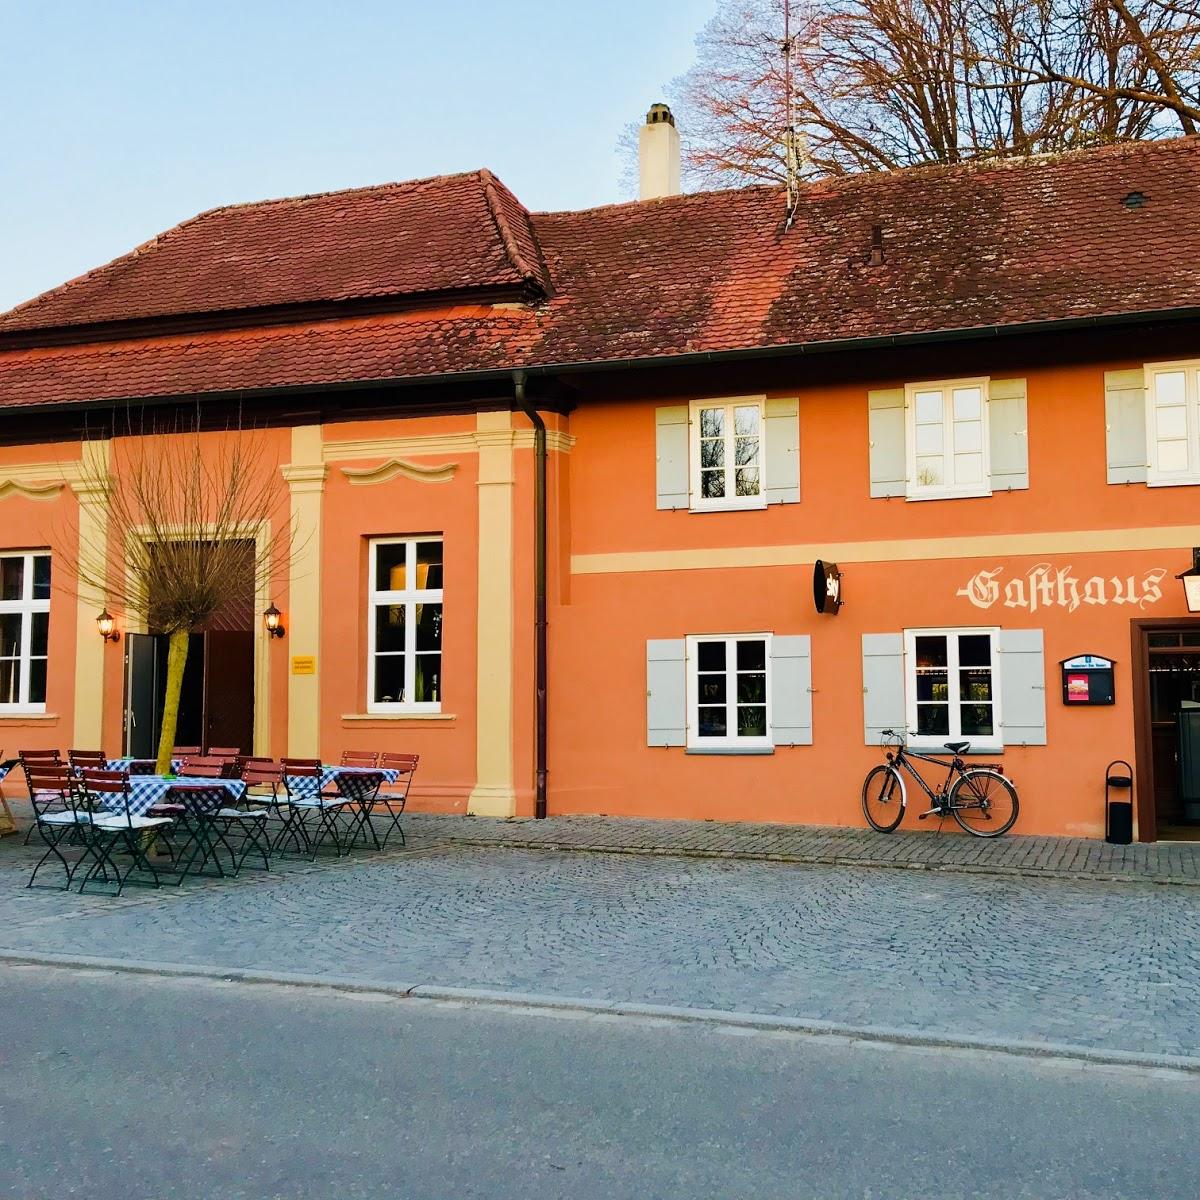 Restaurant "Gasthaus zum Stern" in Dinkelsbühl